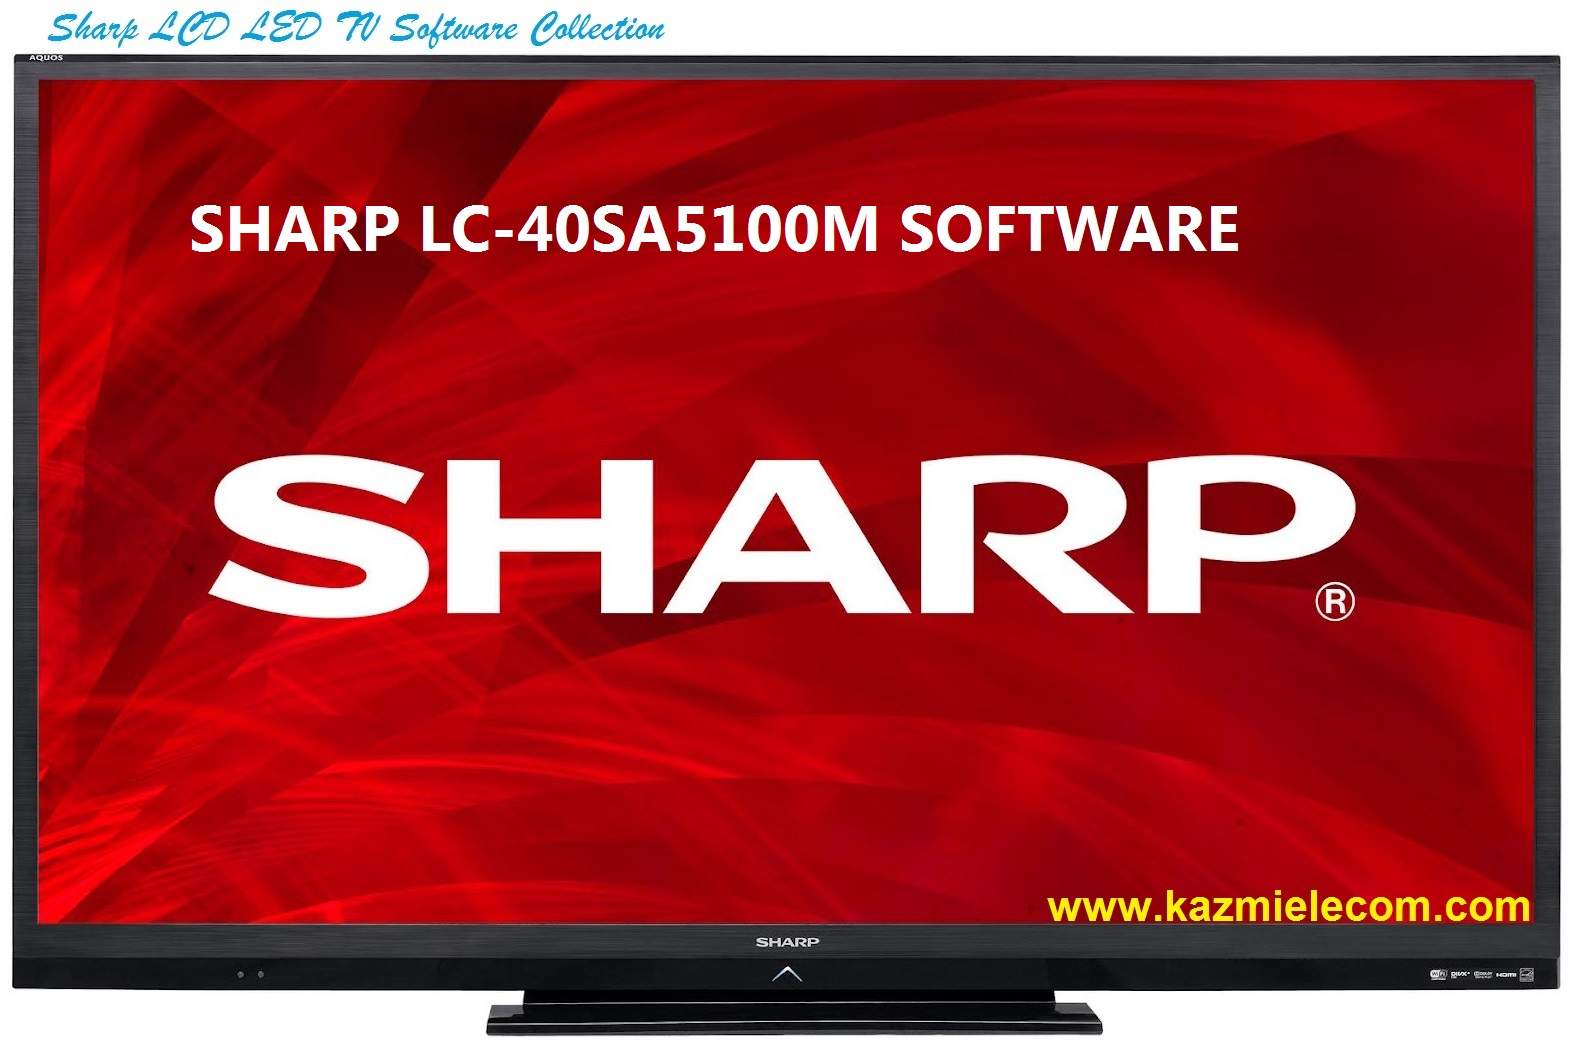 Sharp Lc-40Sa5100M